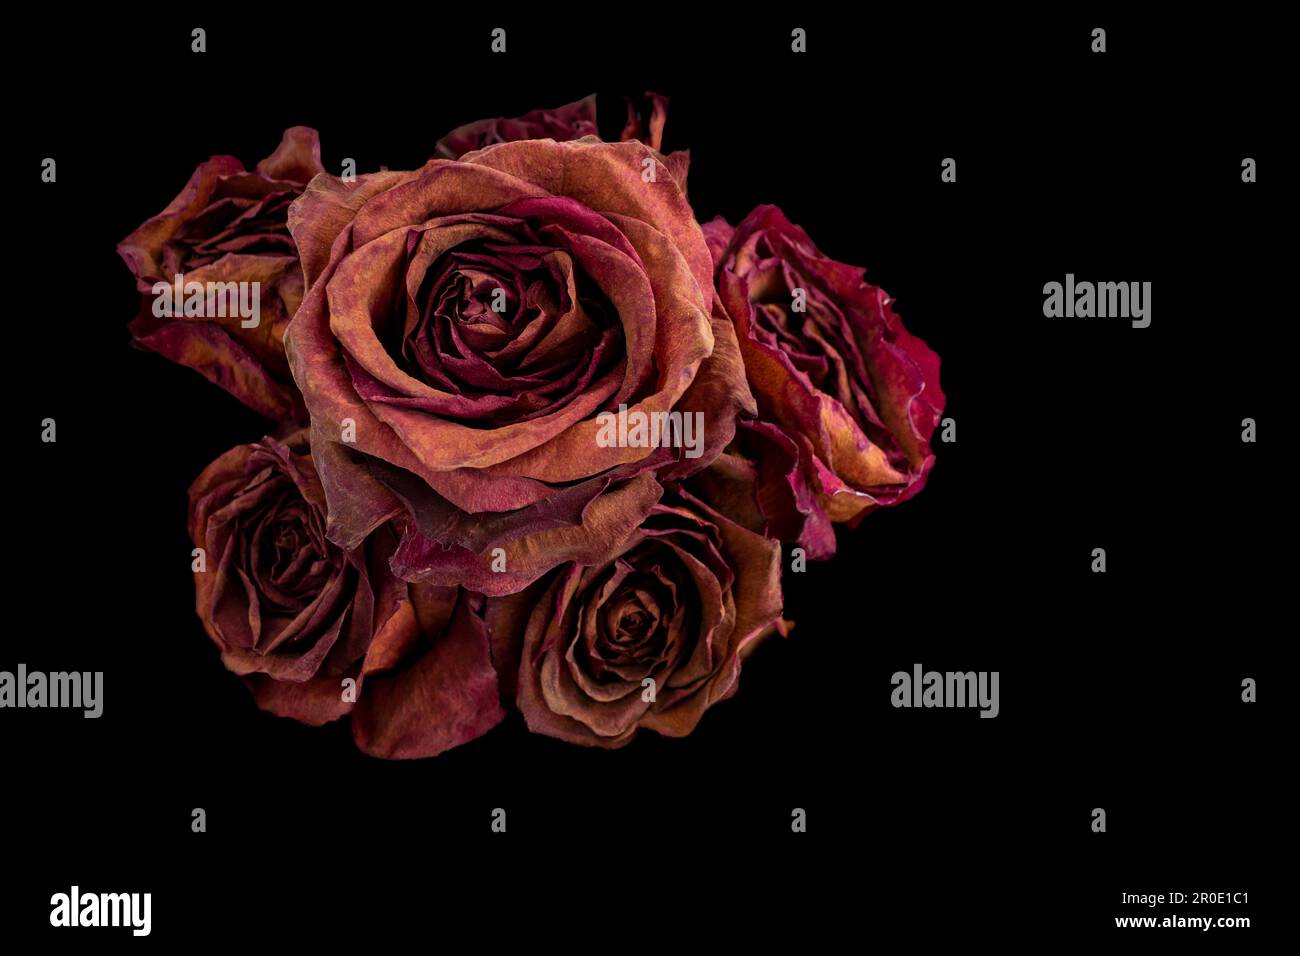 bouquet di rose rosse secche su fondo nero. Il concetto del passare del tempo, dell'invecchiamento, della bellezza dell'essere umano non è eterno. Foto Stock